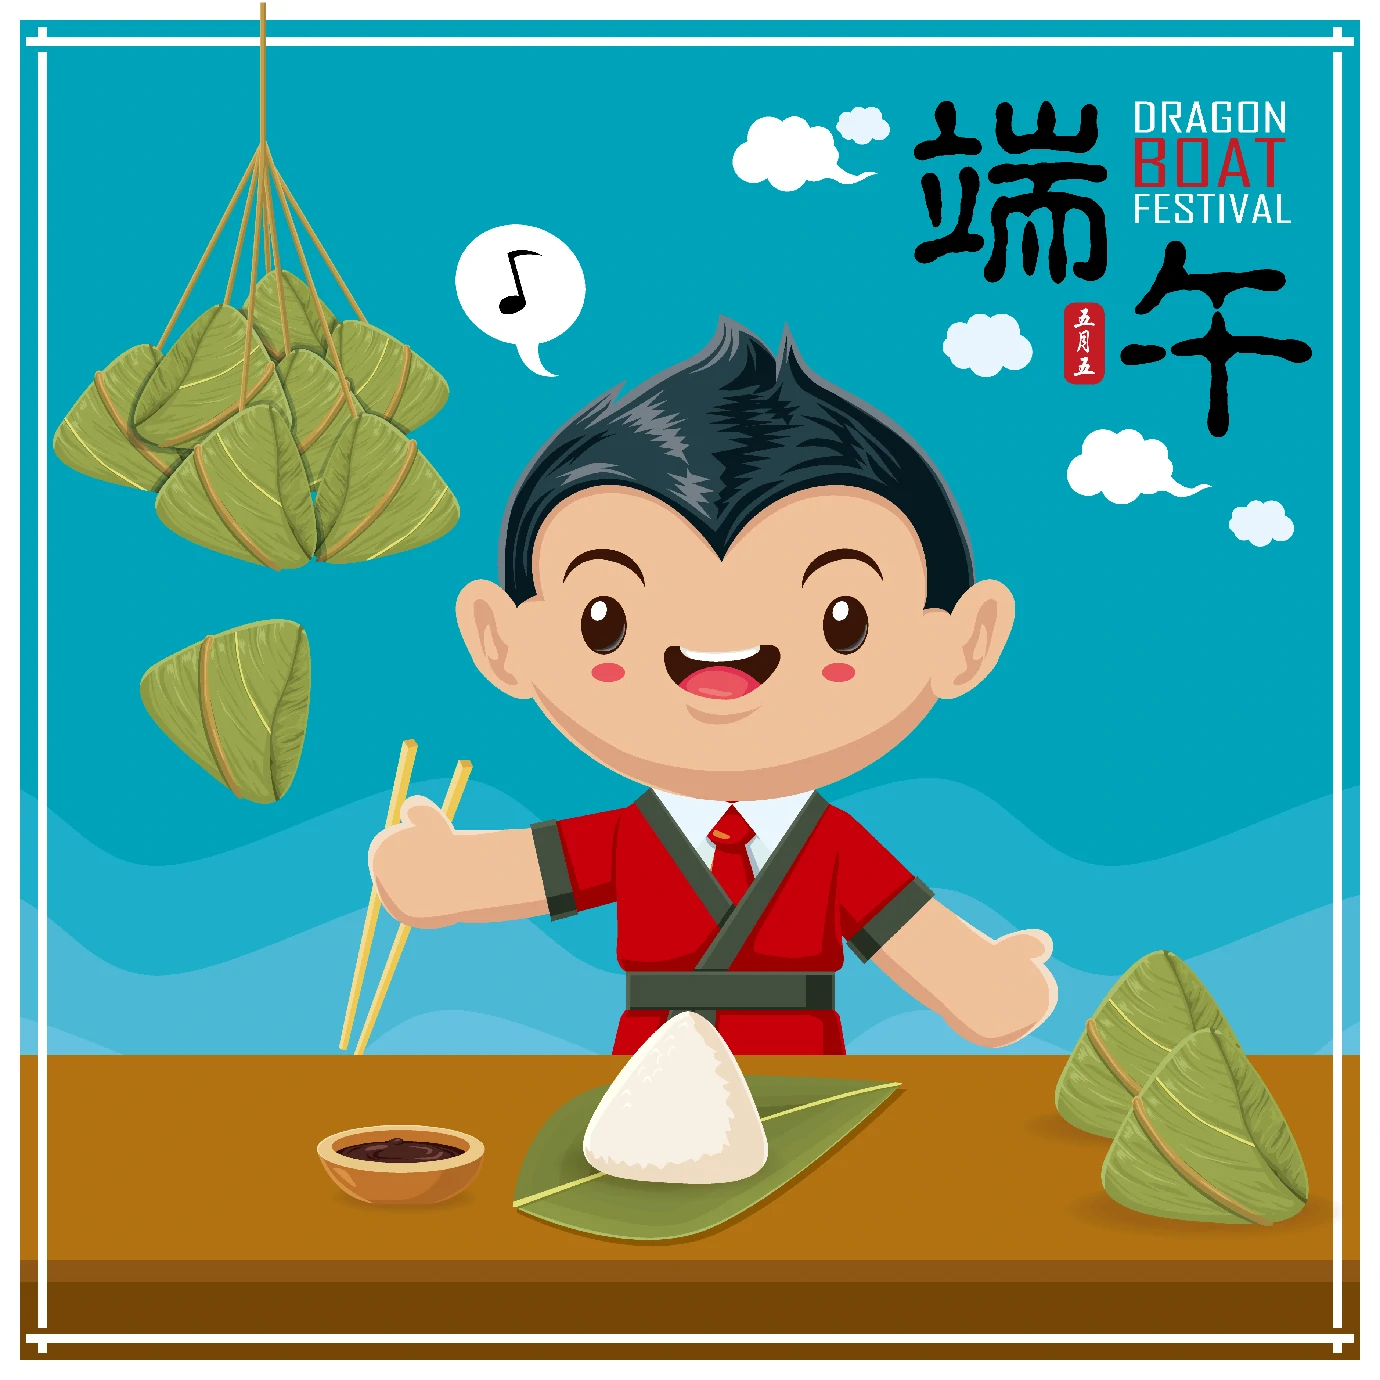 中国传统节日卡通手绘端午节赛龙舟粽子插画海报AI矢量设计素材【049】